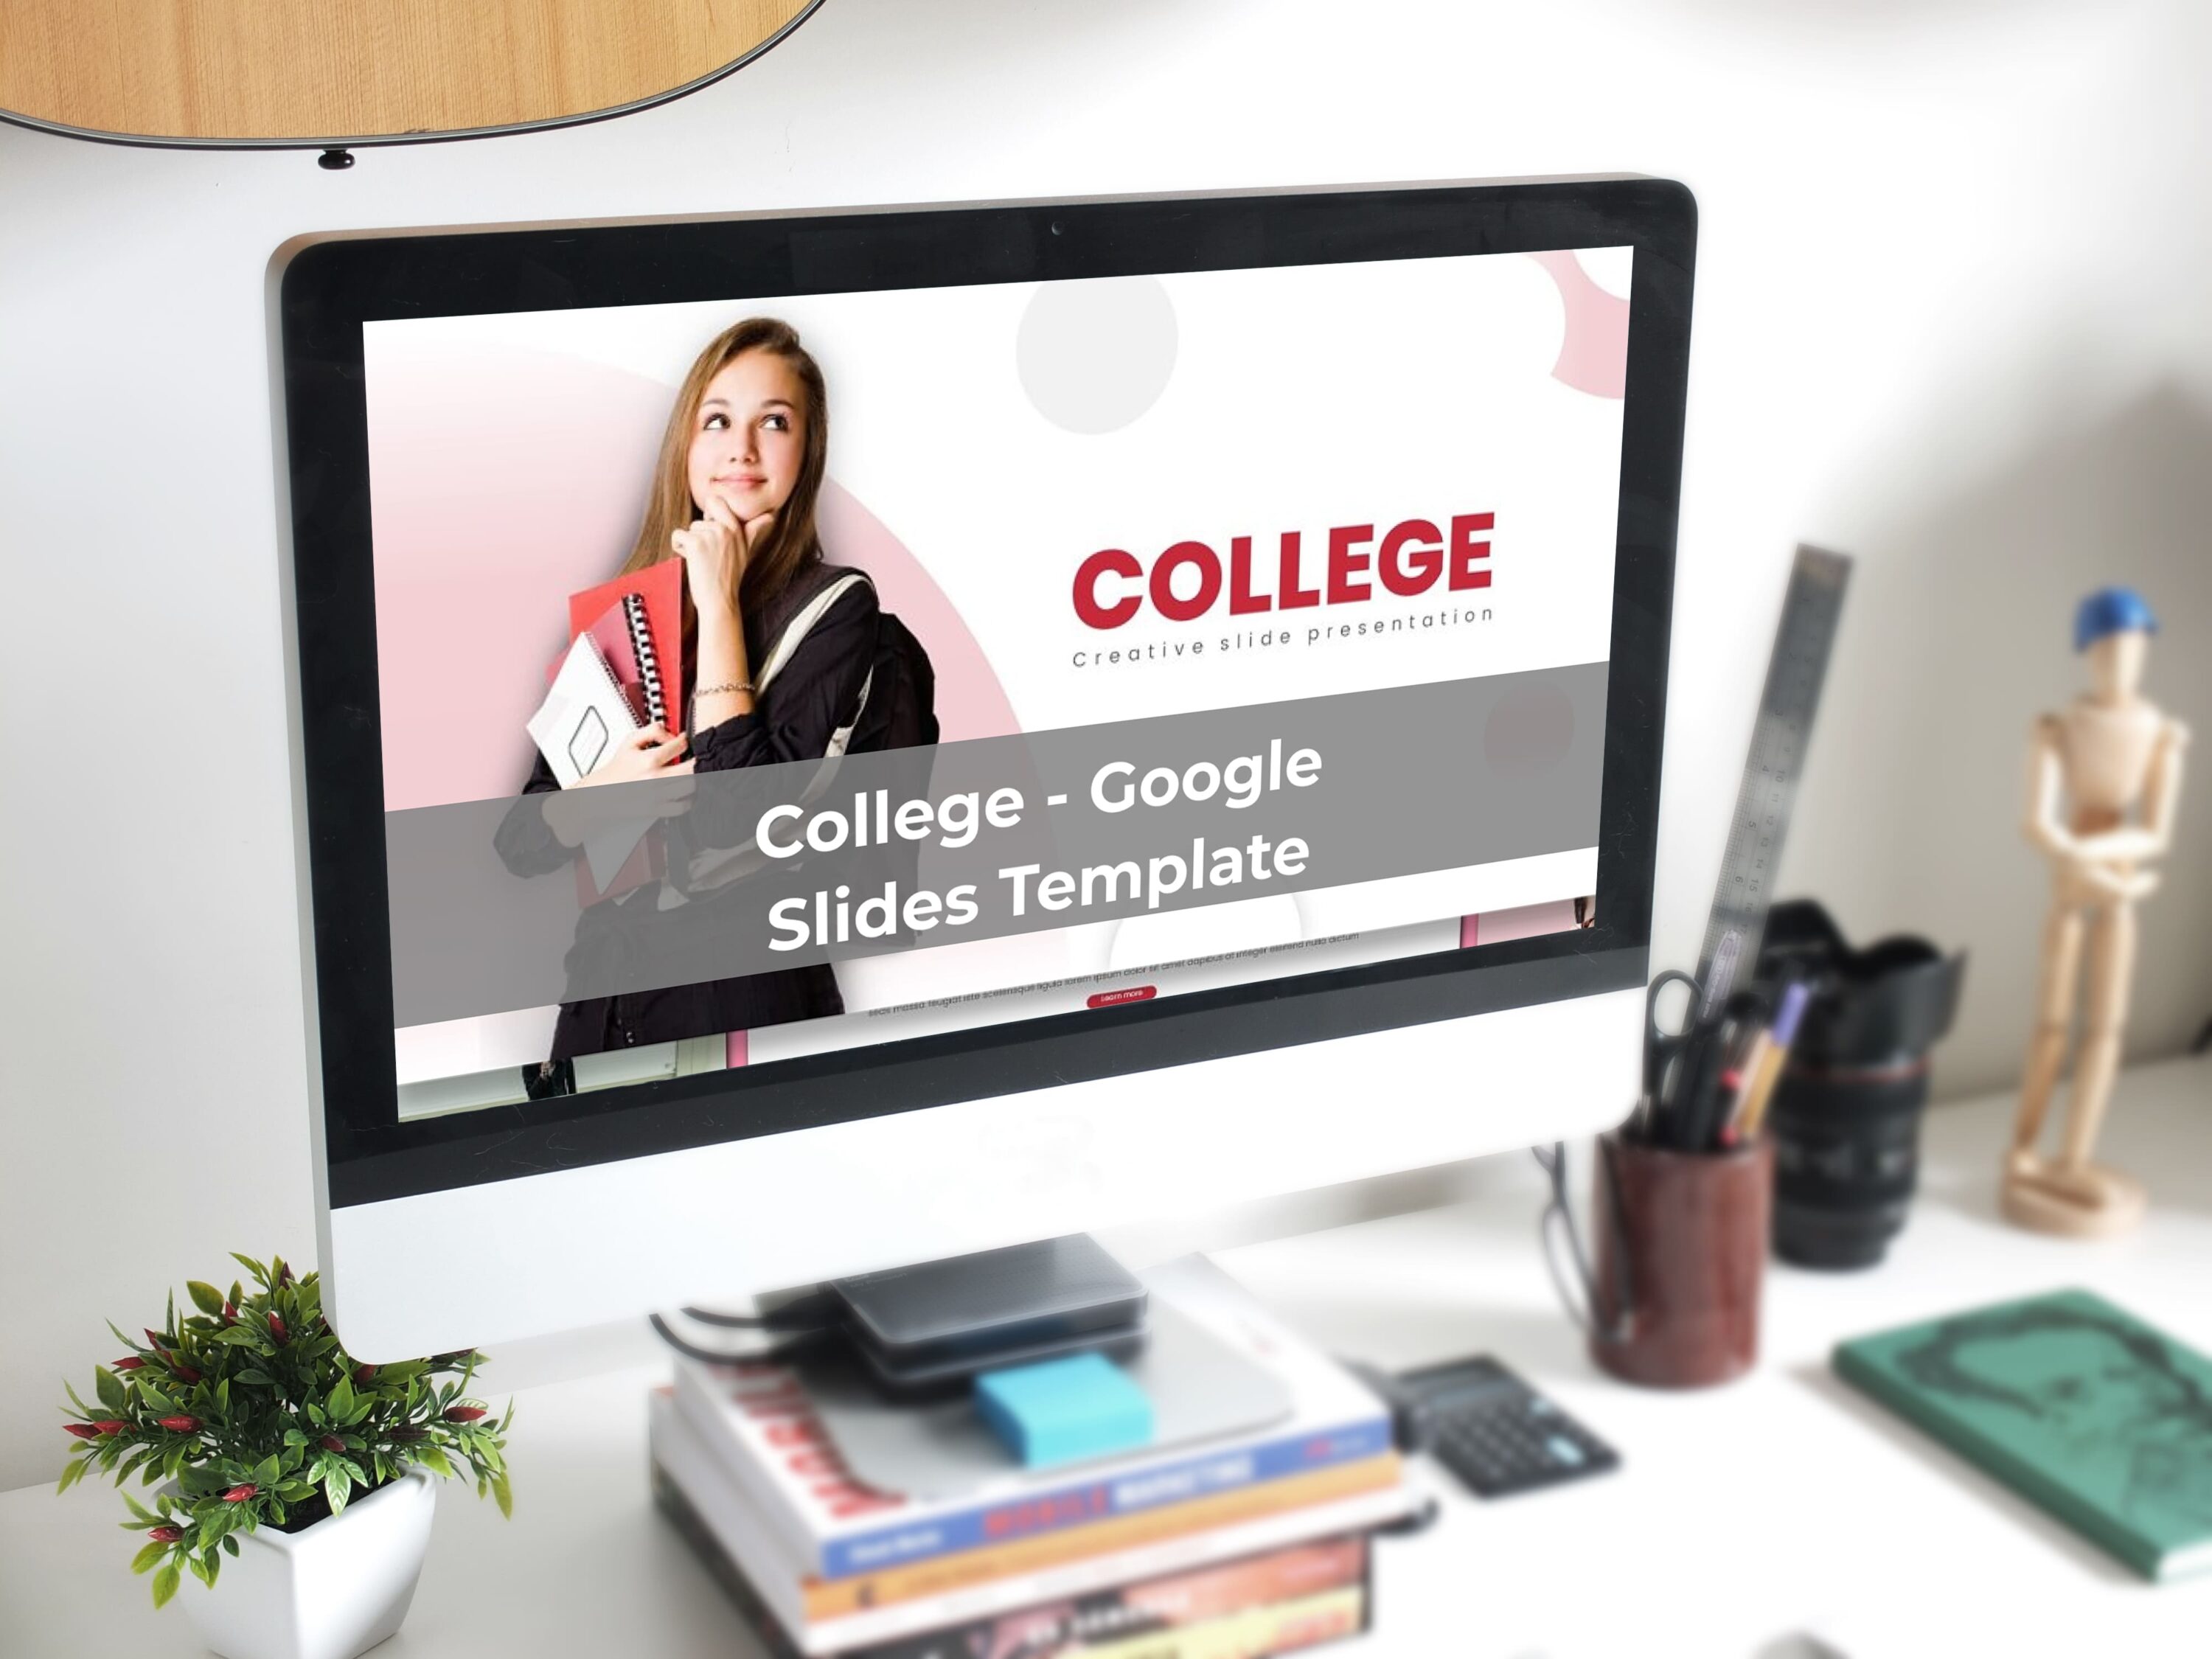 College - Google Slides Template - desktop.